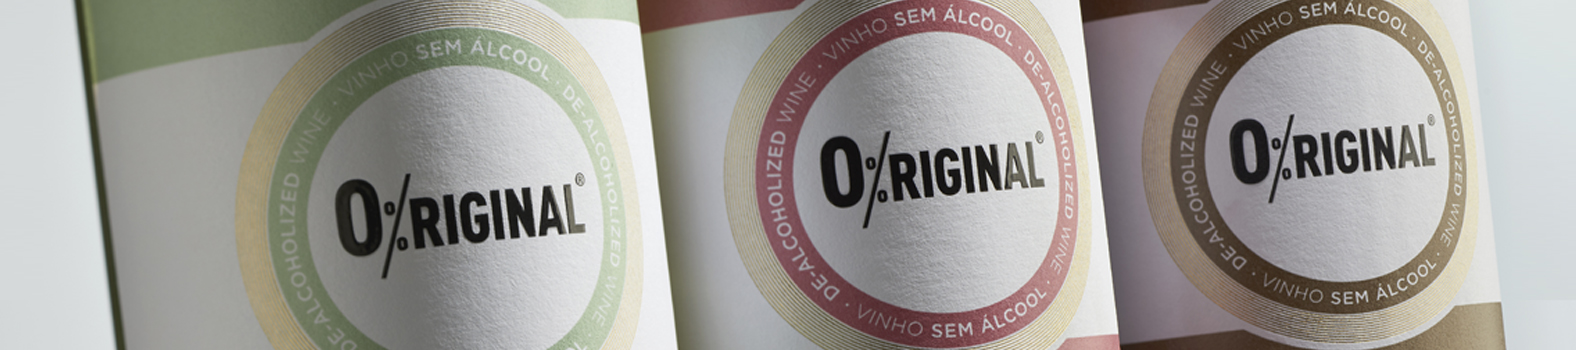 O%riginal is the new José Maria da Fonseca’s brand of de-alcoholised wines